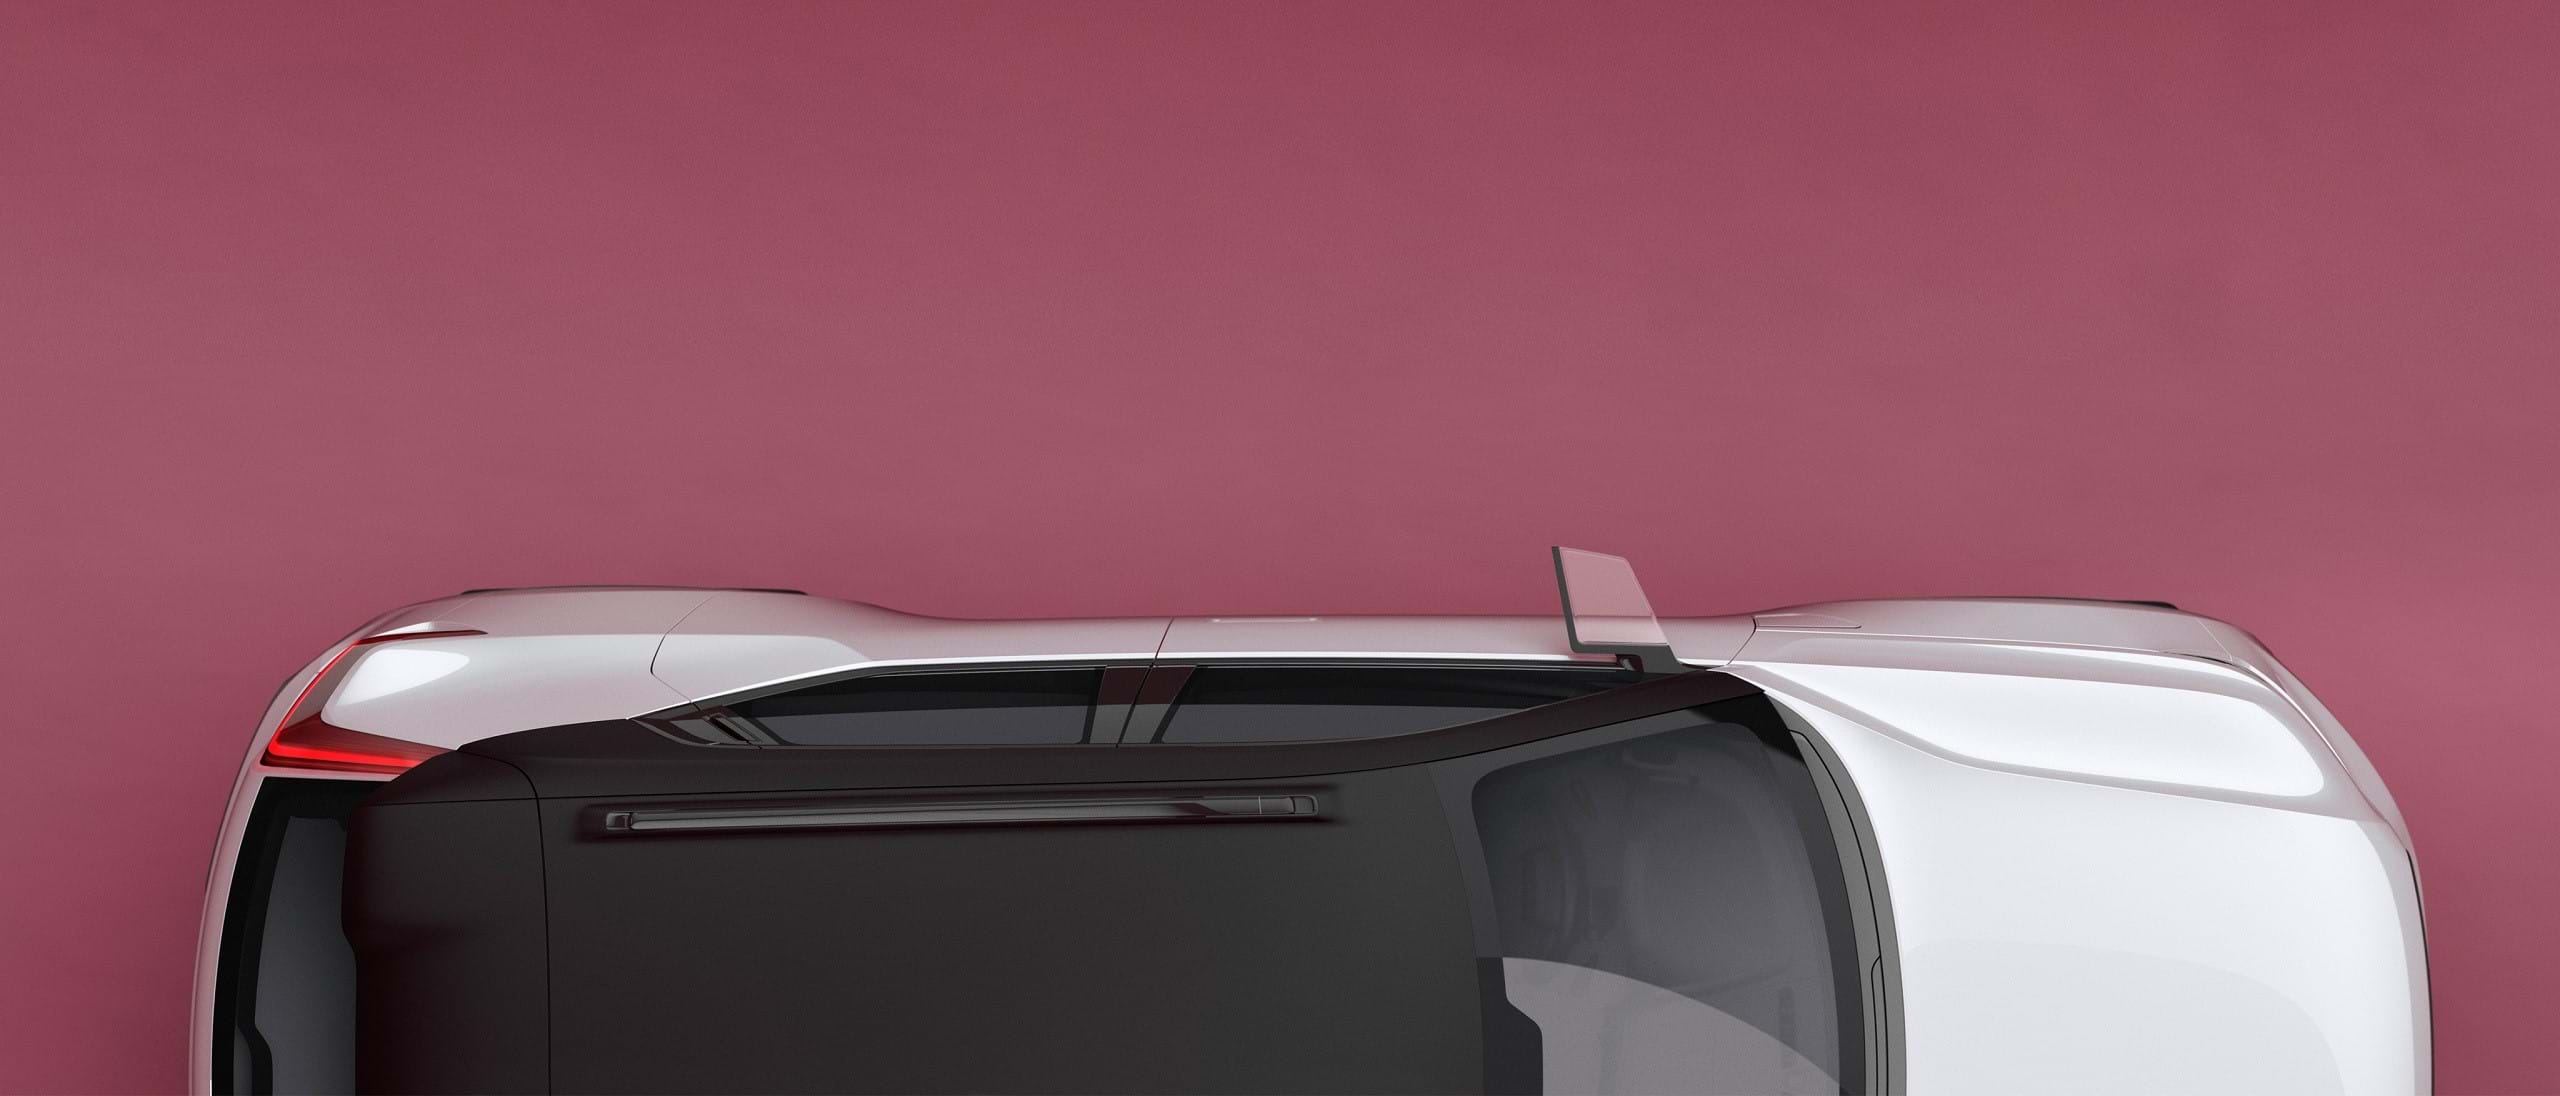 Xe Volvo Concept 40 màu trắng với nóc tương phản màu đen nhìn từ trên cao